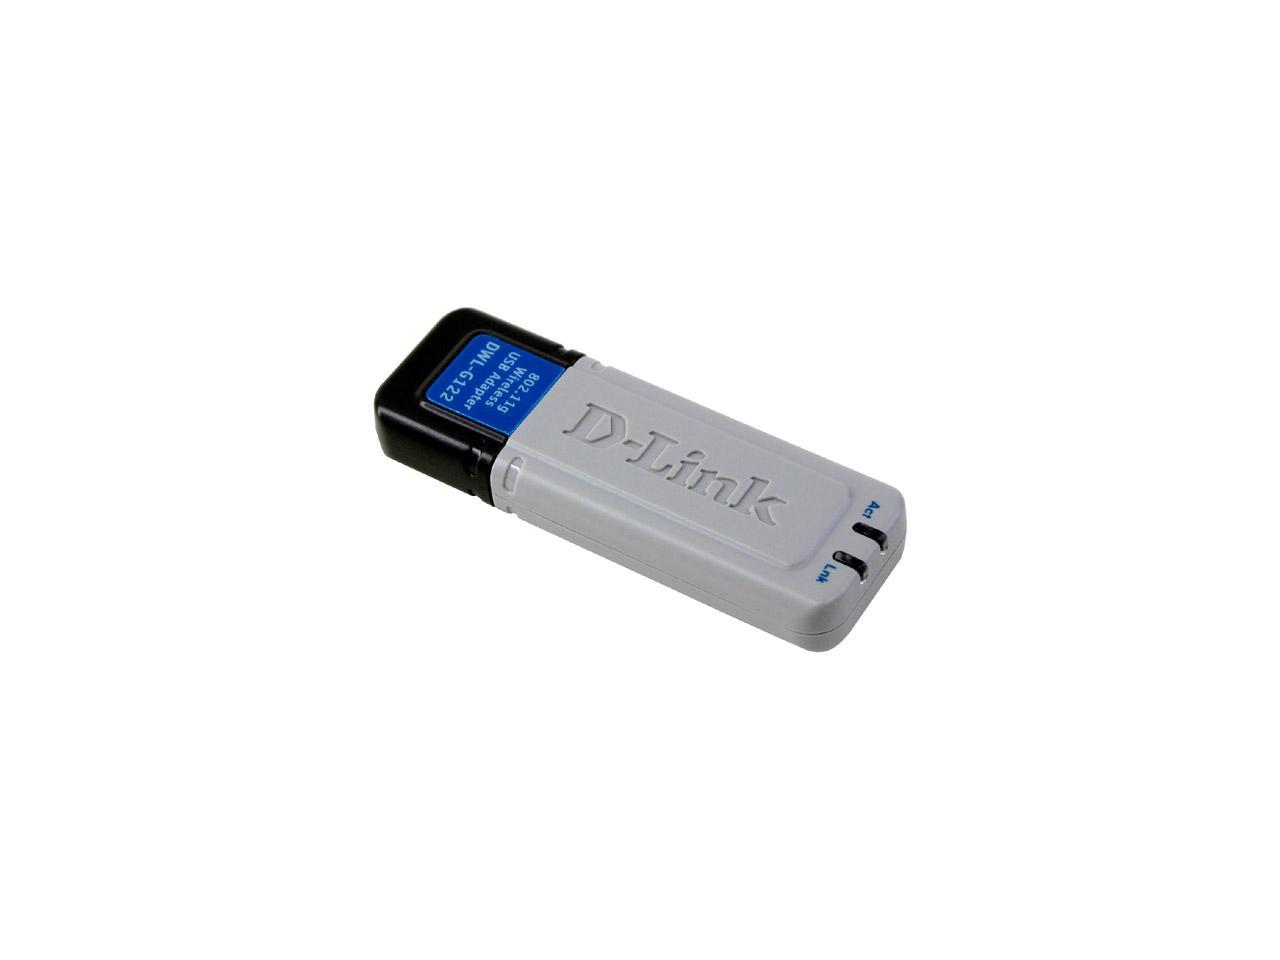 D-Link dwl-g122 AirPlus G 802.11g Wireless G WLAN USB WiFi Adapter NEU 